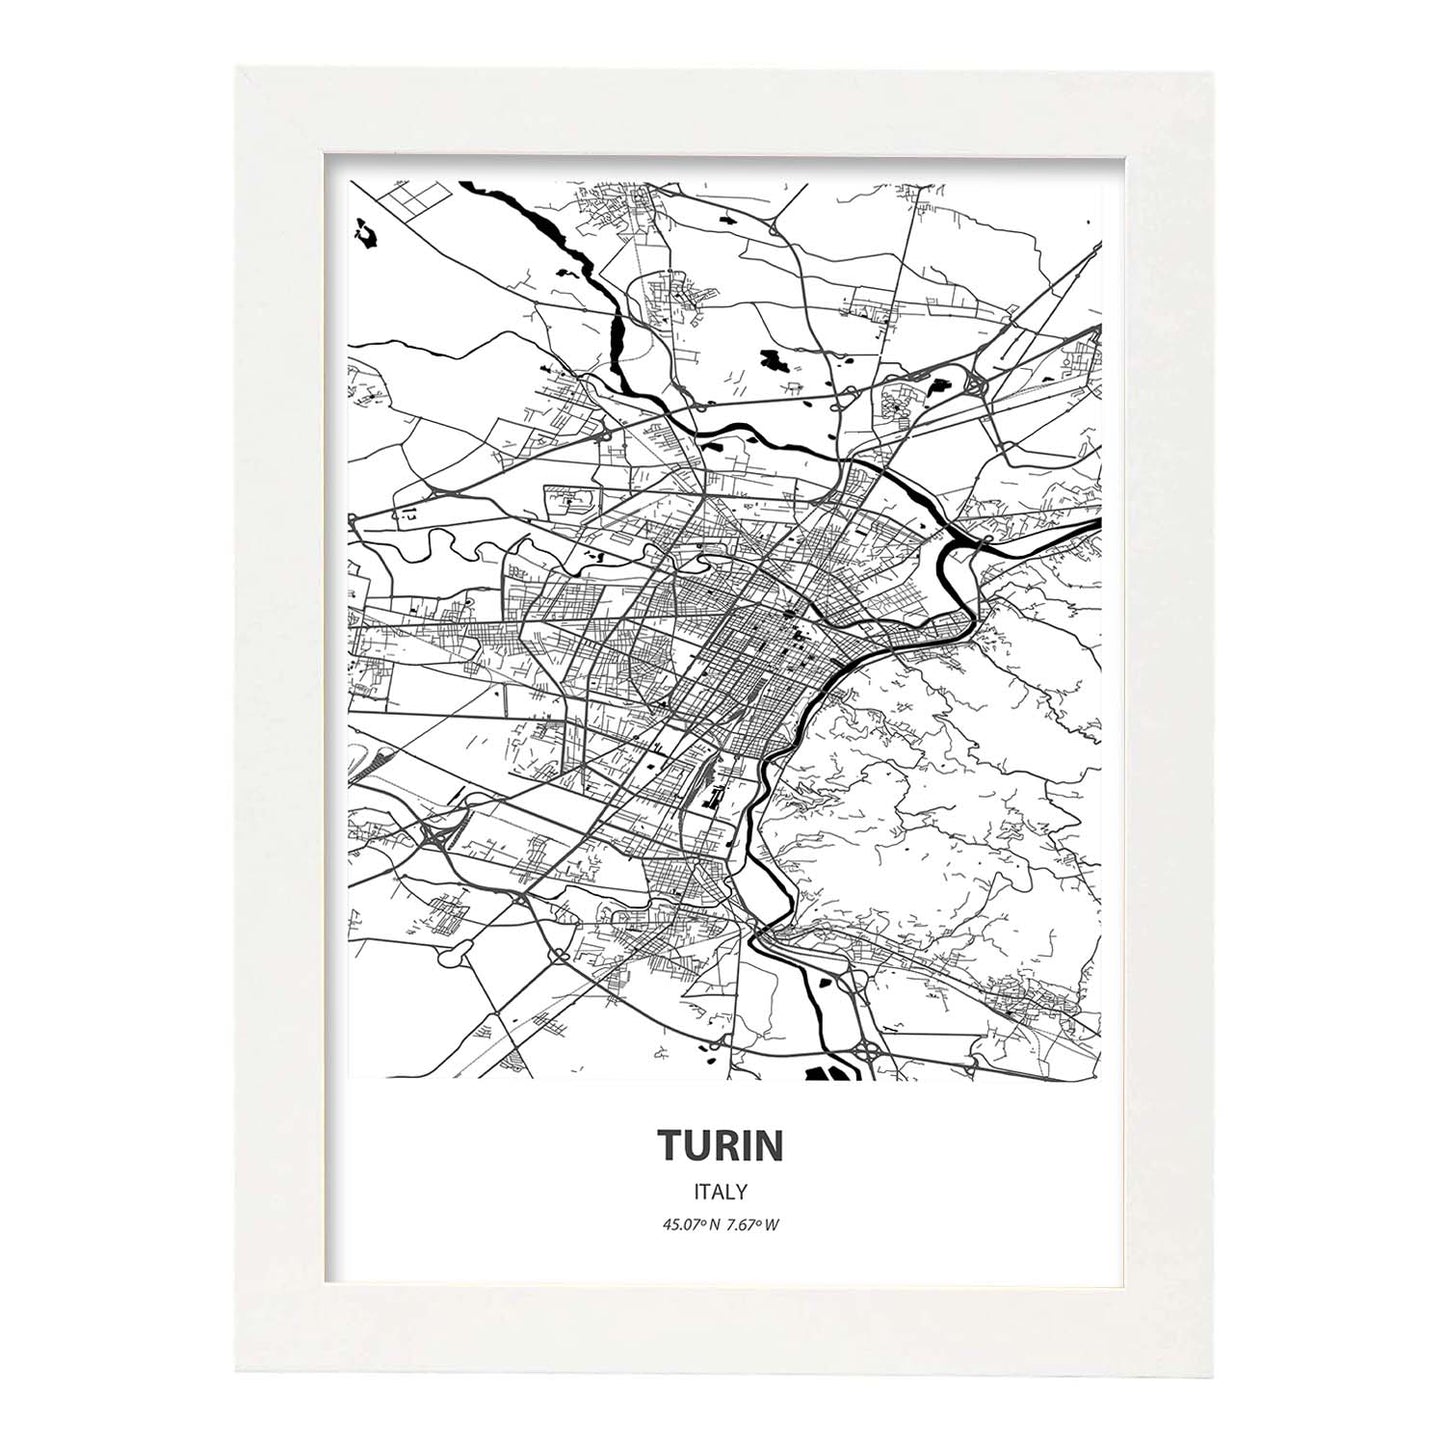 Poster con mapa de Turin - Italia. Láminas de ciudades de Italia con mares y ríos en color negro.-Artwork-Nacnic-A3-Marco Blanco-Nacnic Estudio SL